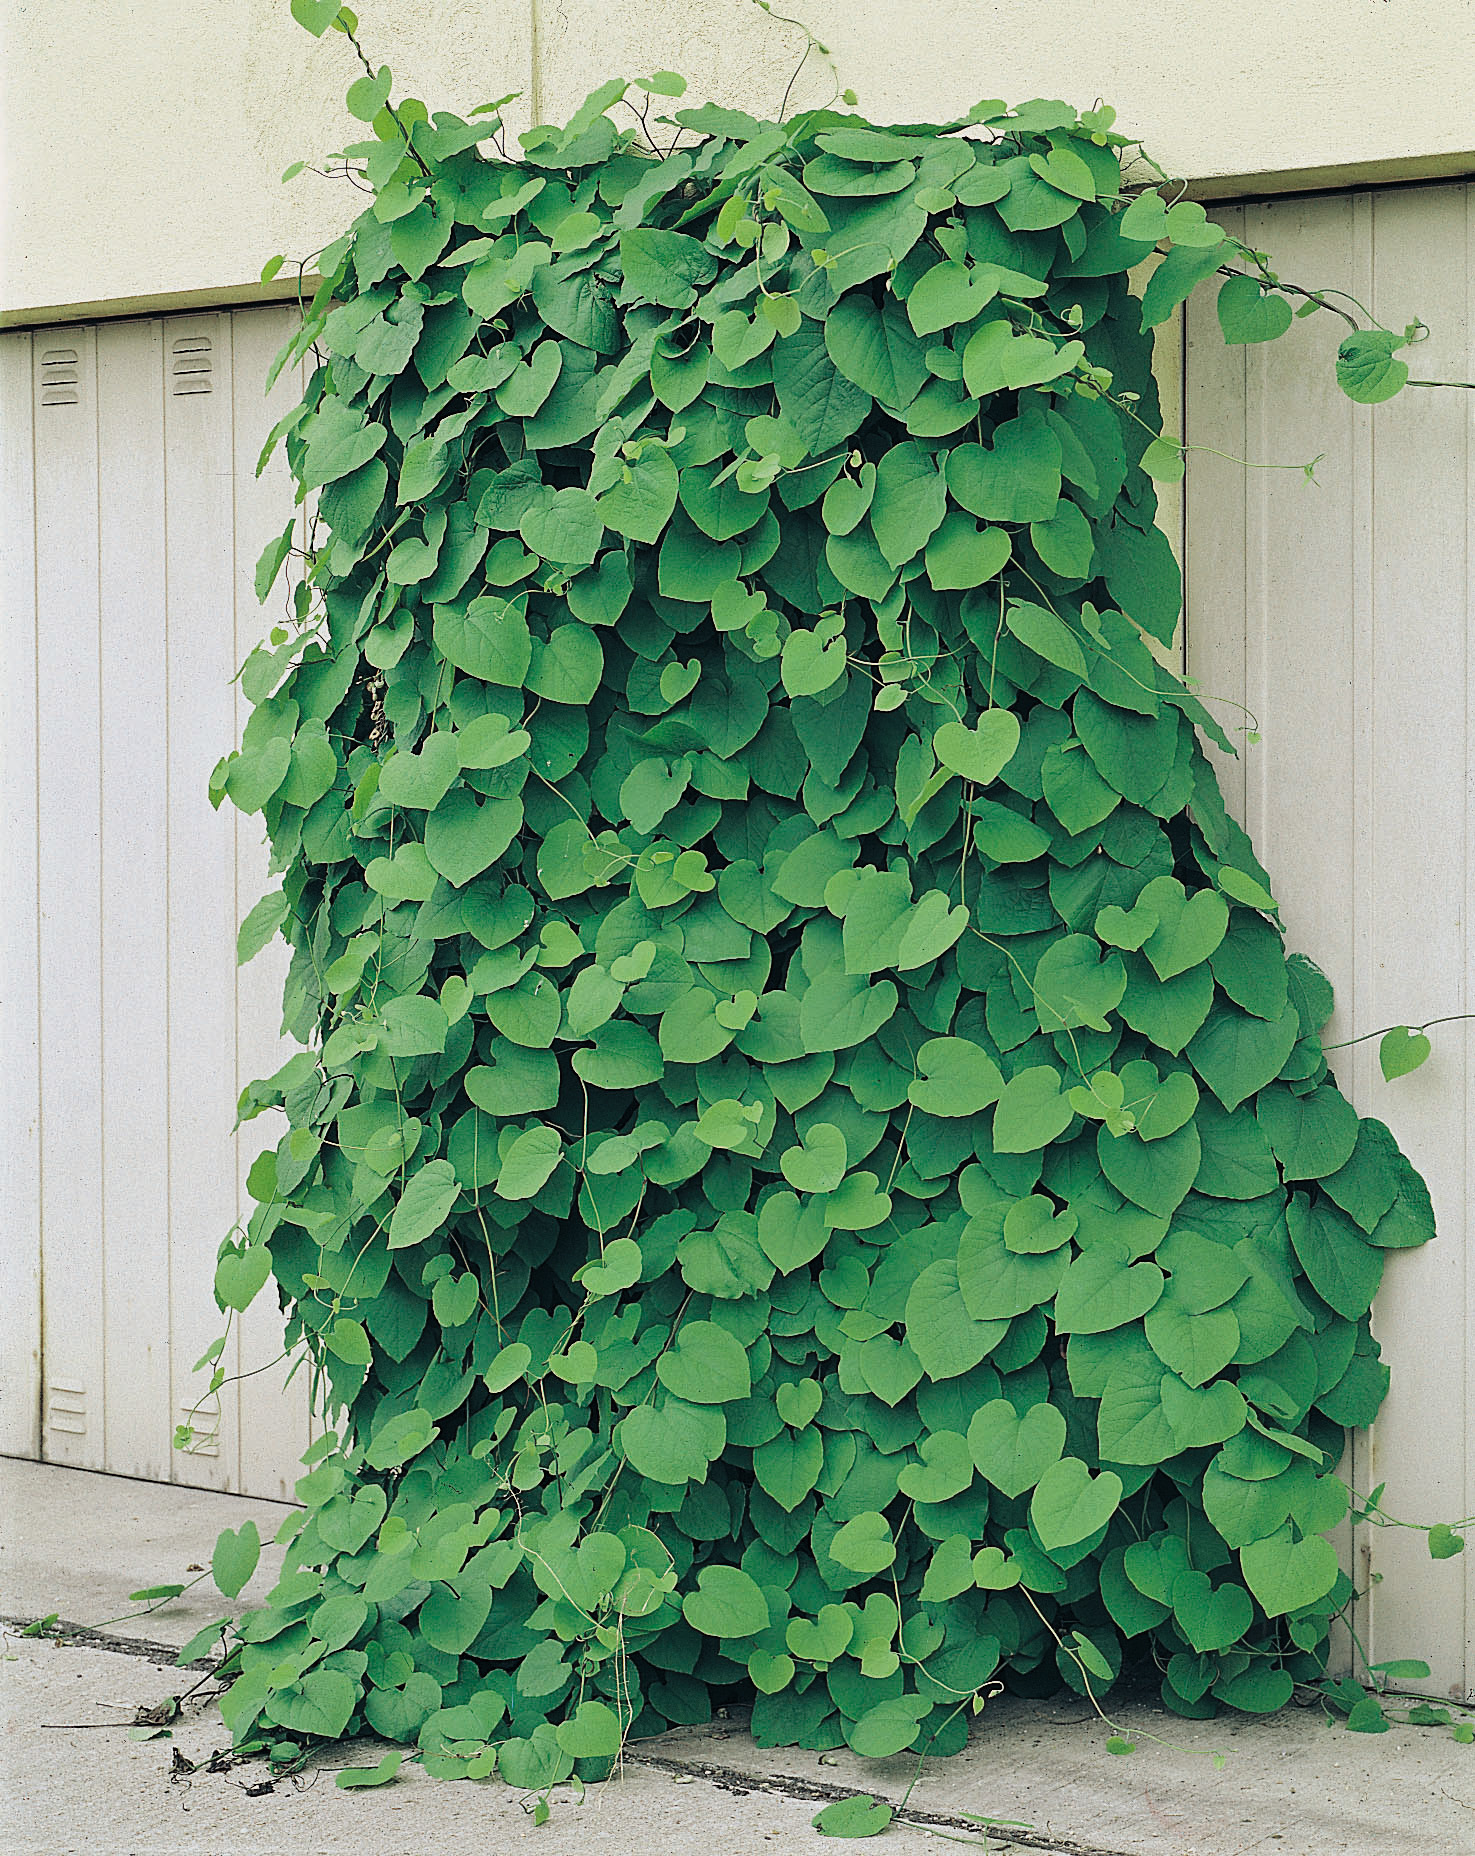 köp klätterväxt pipranka (Aristolochia macrophylla) online på granngården.se med hemleverans